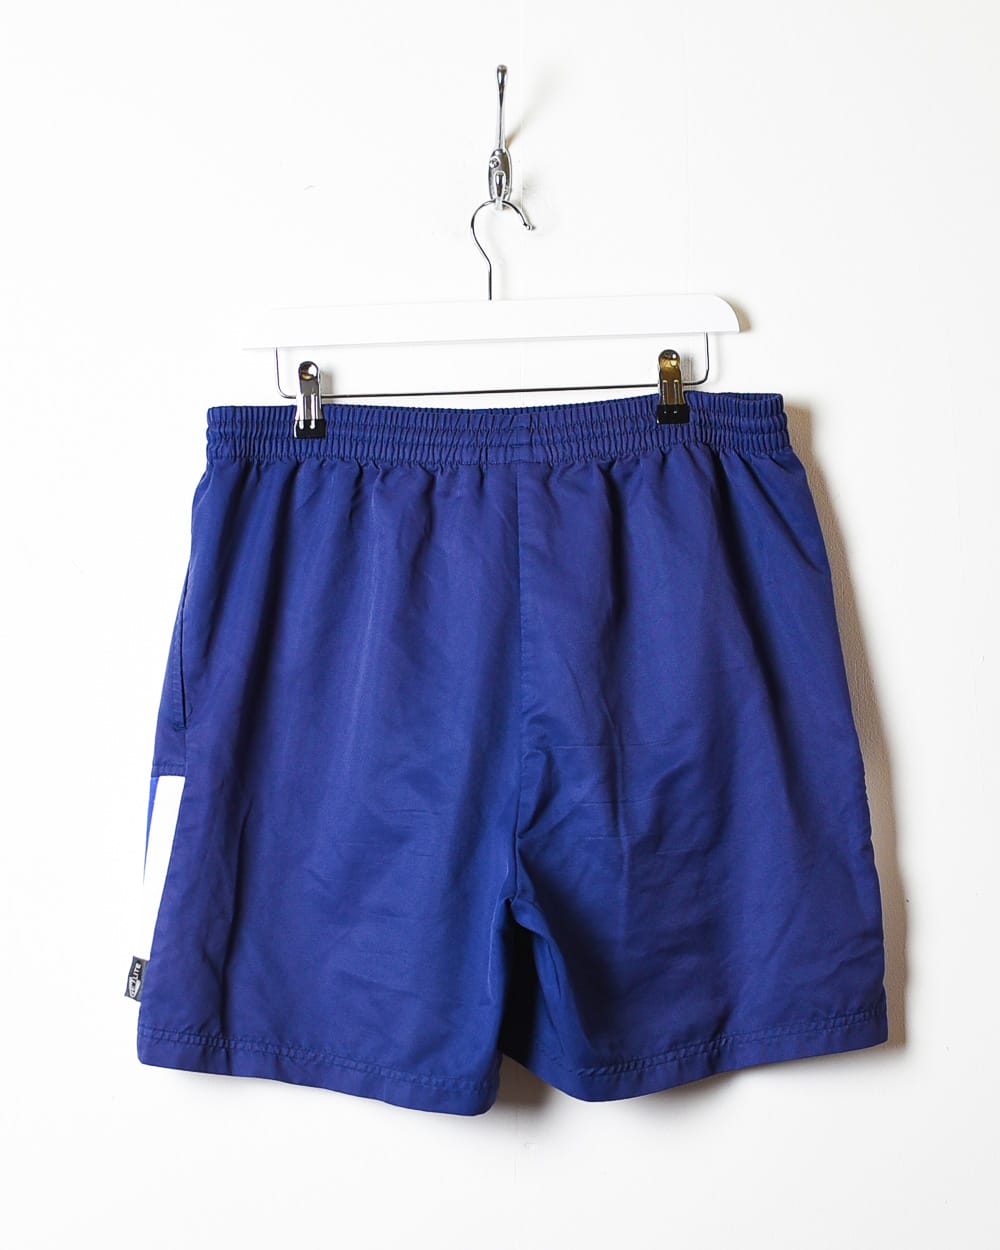 Navy Adidas Shorts - Large